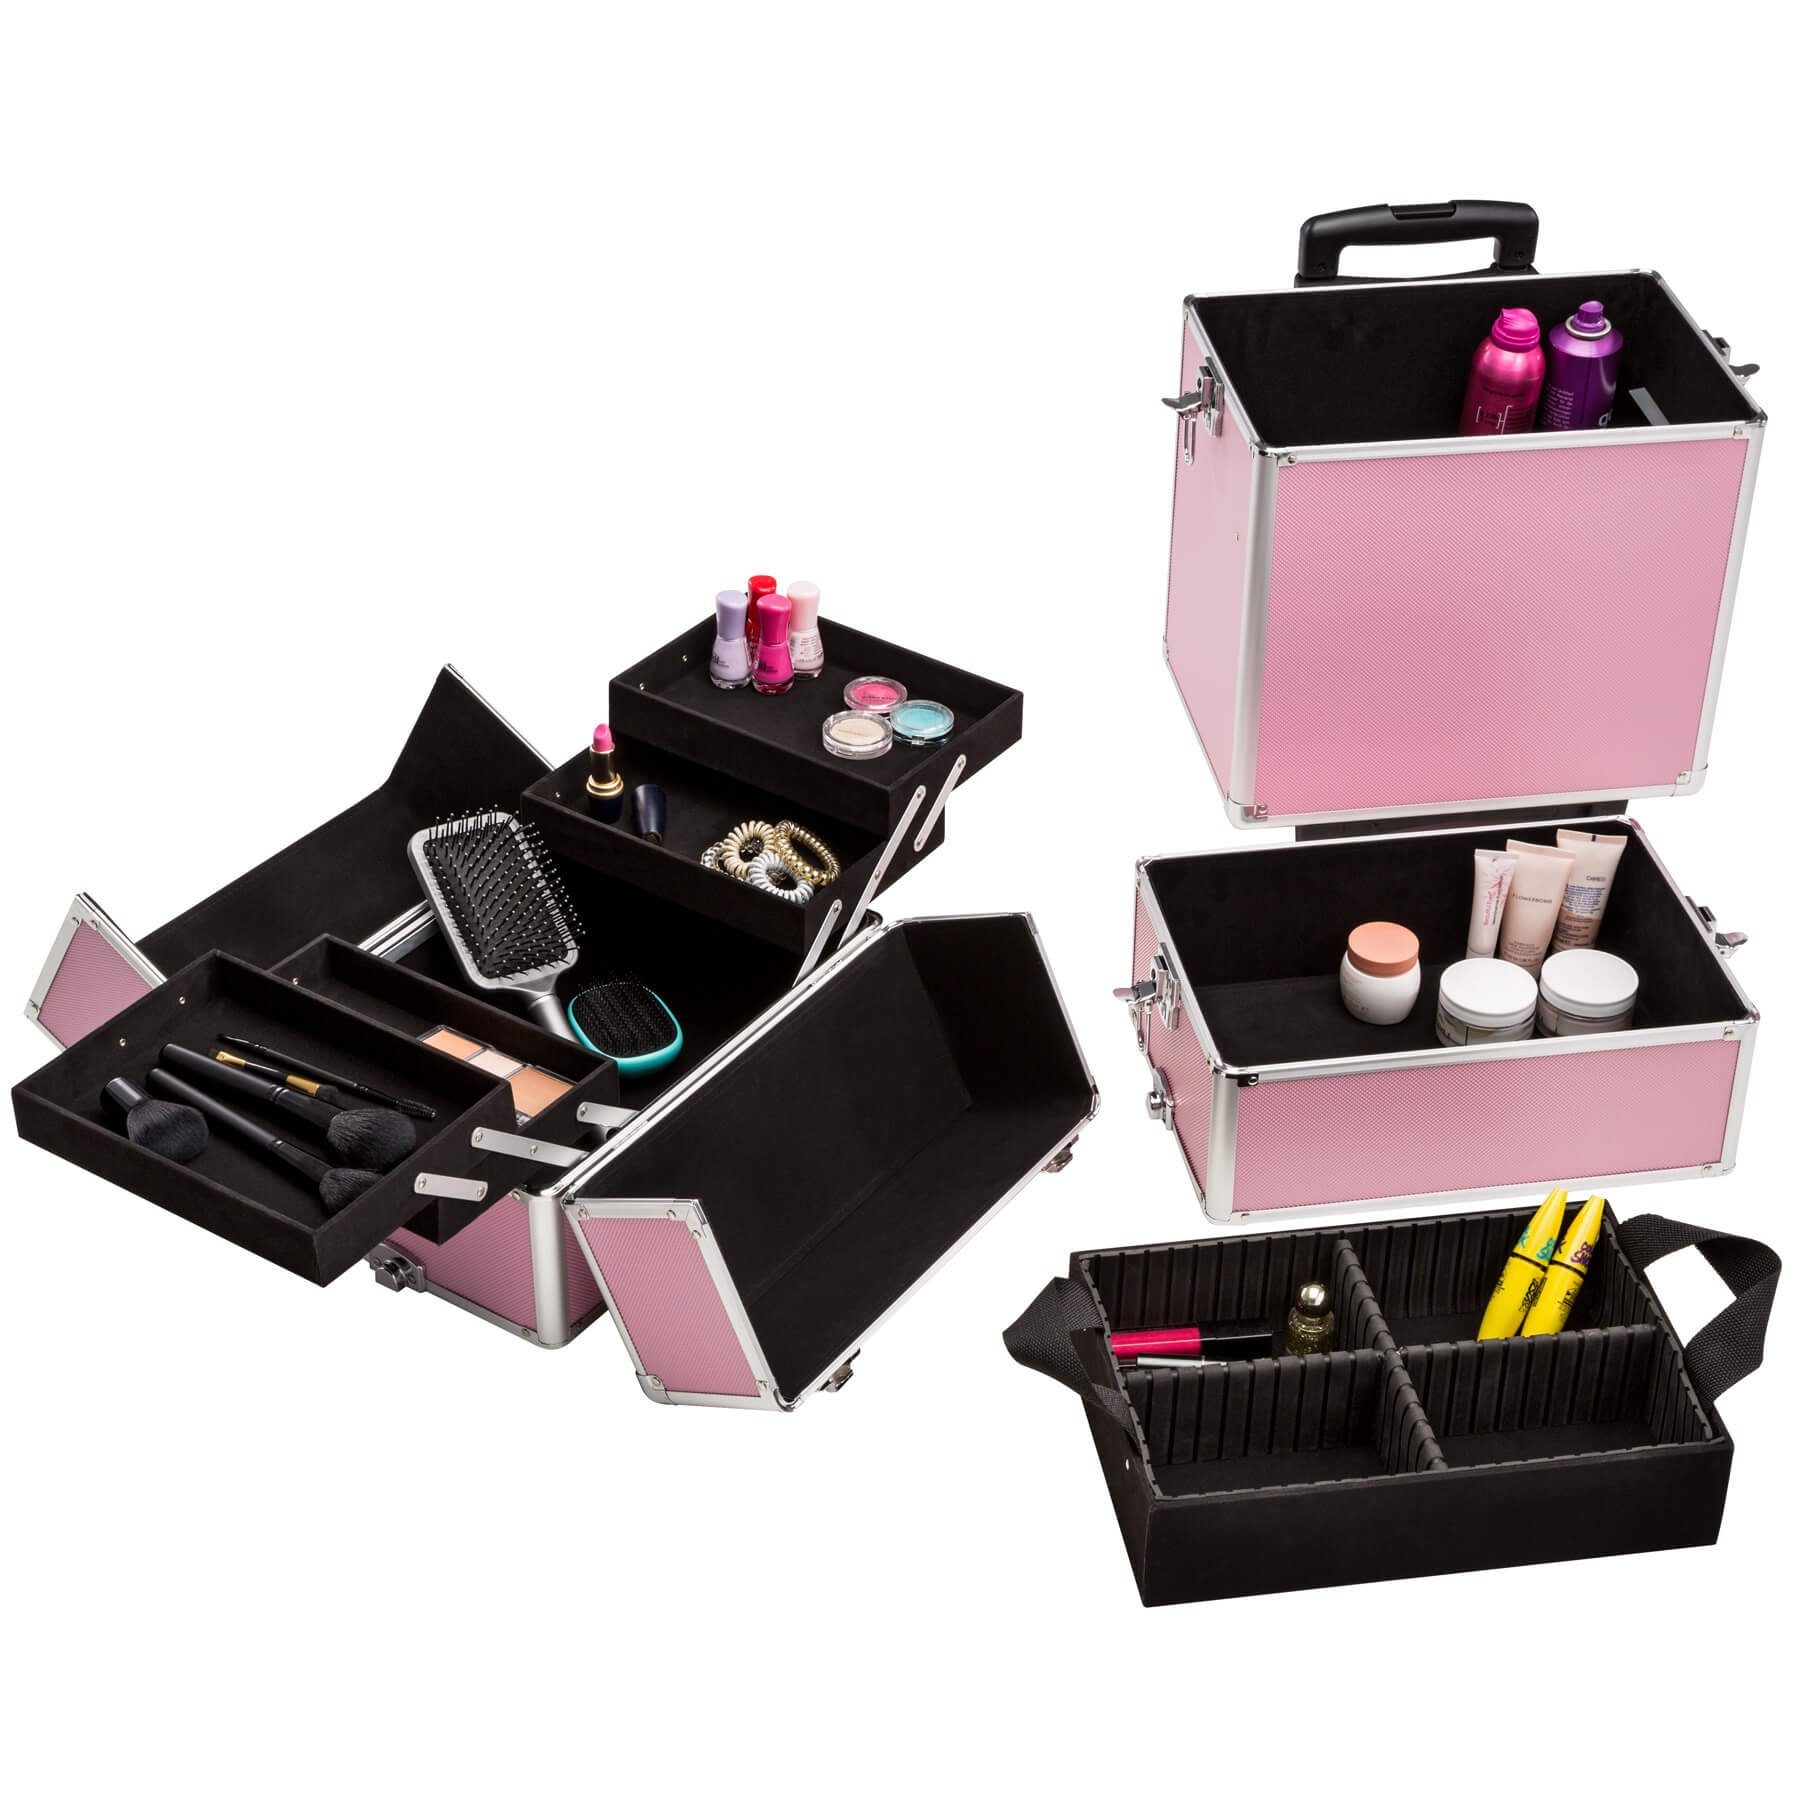 Rollen, mit 3 Kosmetiktrolley Etagen, pink tectake 2 erweiterbar Koffer